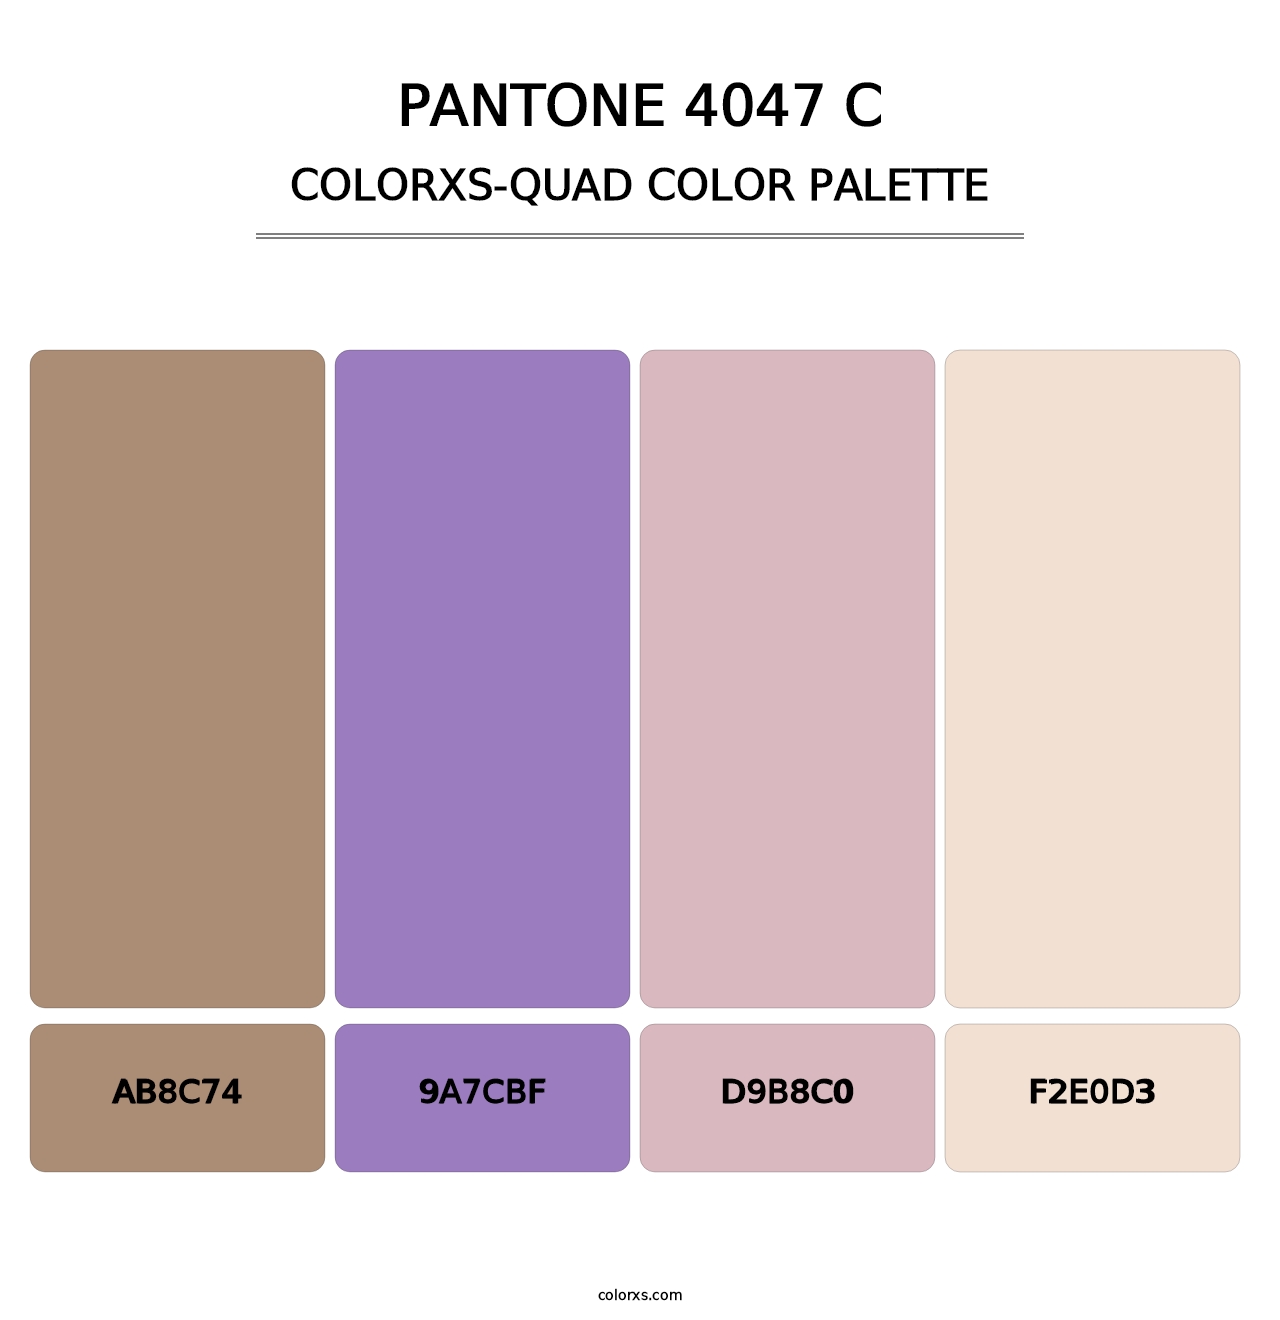 PANTONE 4047 C - Colorxs Quad Palette